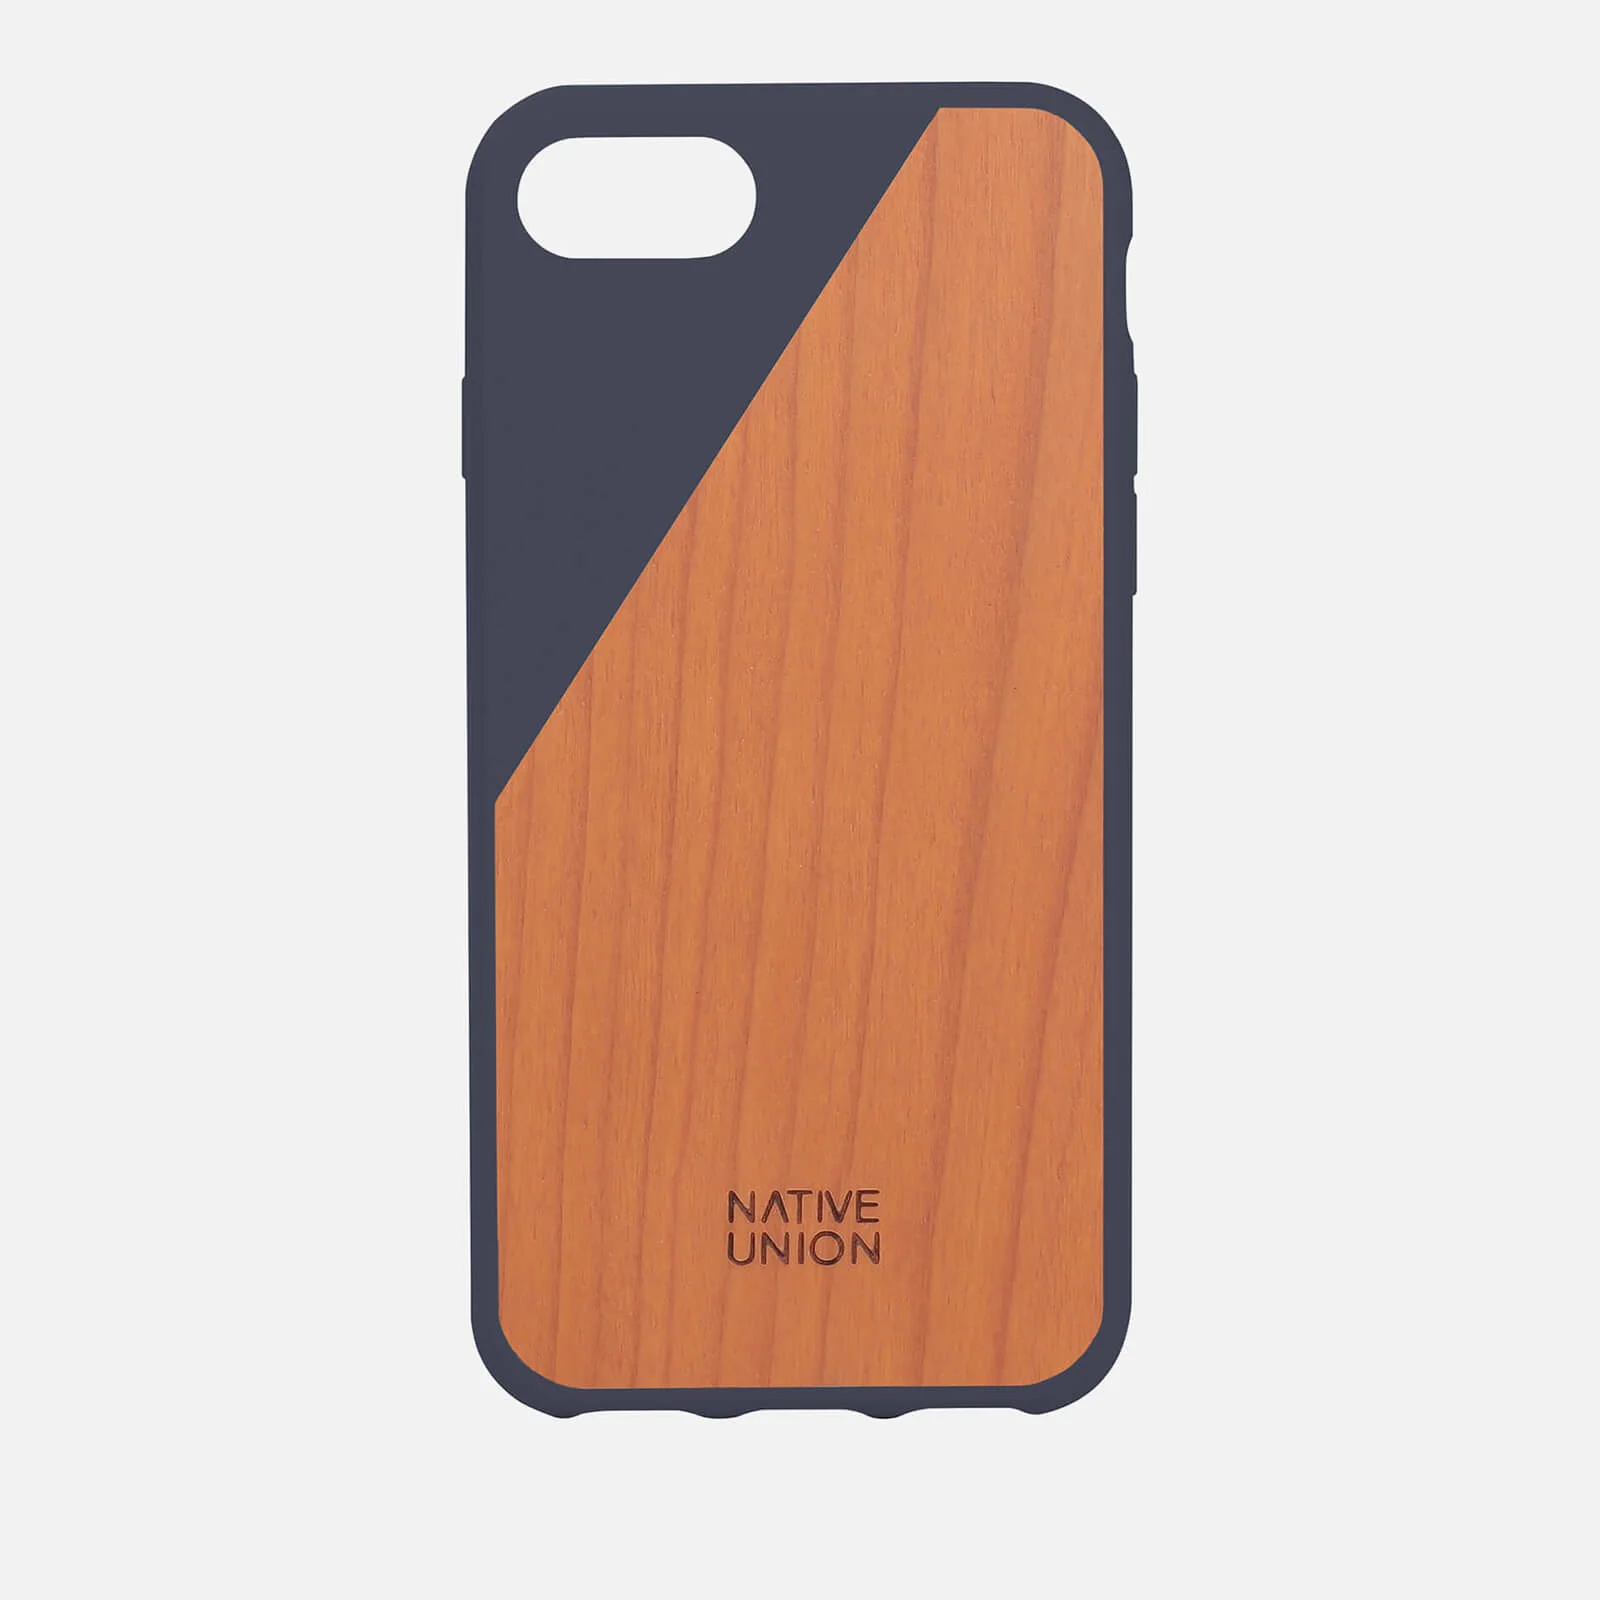 Native Union Clic Wooden iPhone 7 Case - Marine Image 1